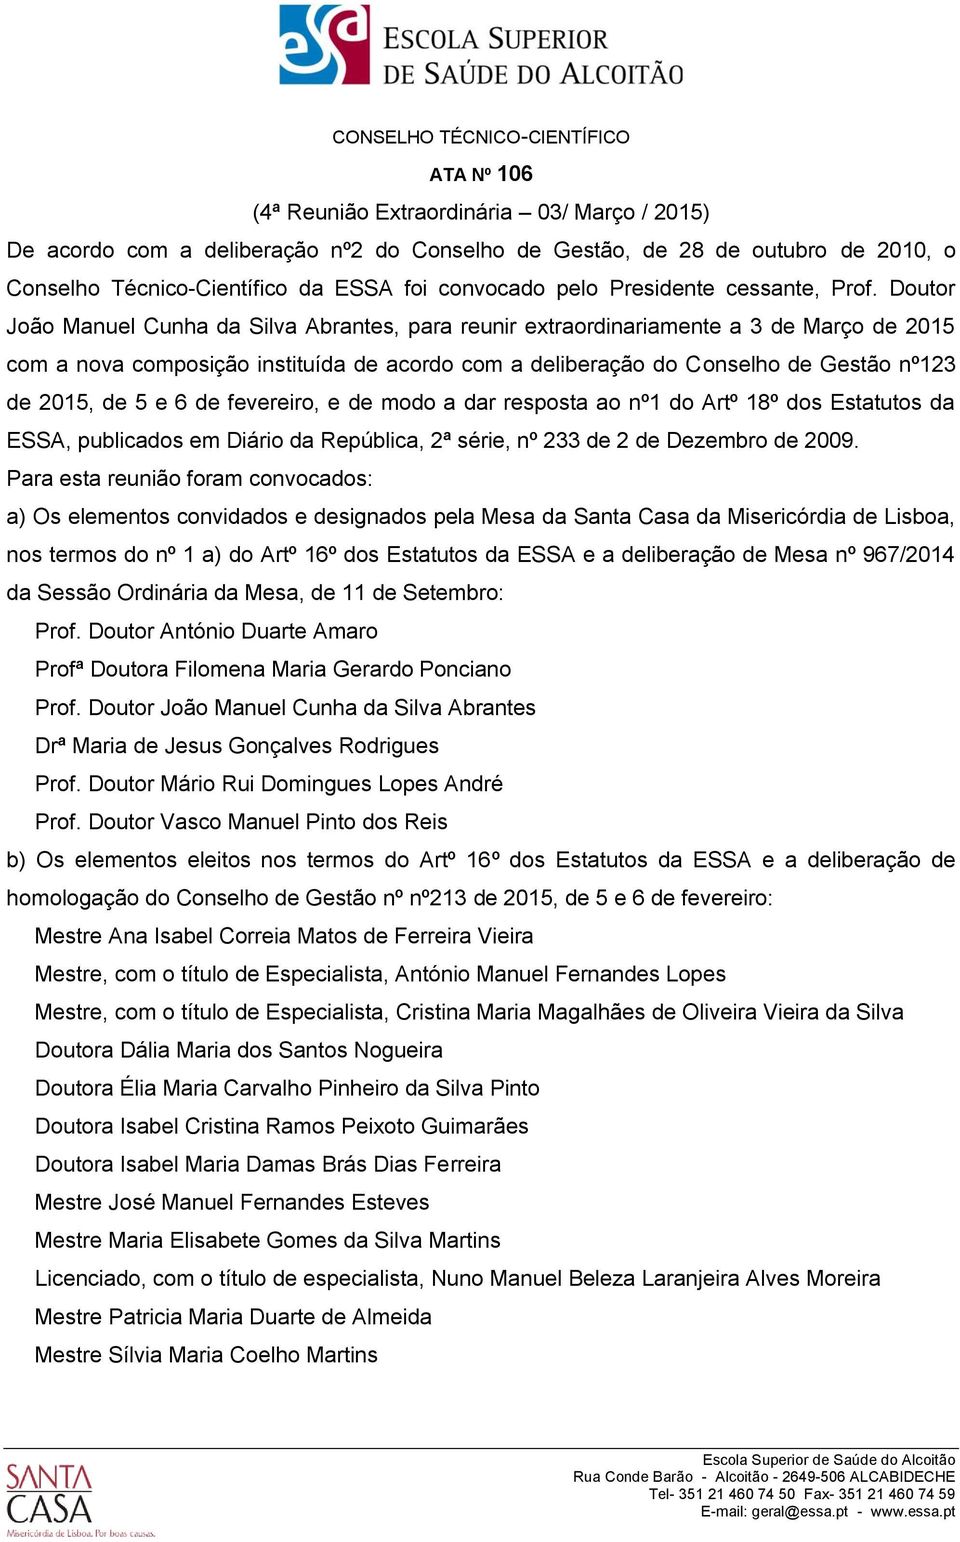 Doutor João Manuel Cunha da Silva Abrantes, para reunir extraordinariamente a 3 de Março de 2015 com a nova composição instituída de acordo com a deliberação do Conselho de Gestão nº123 de 2015, de 5